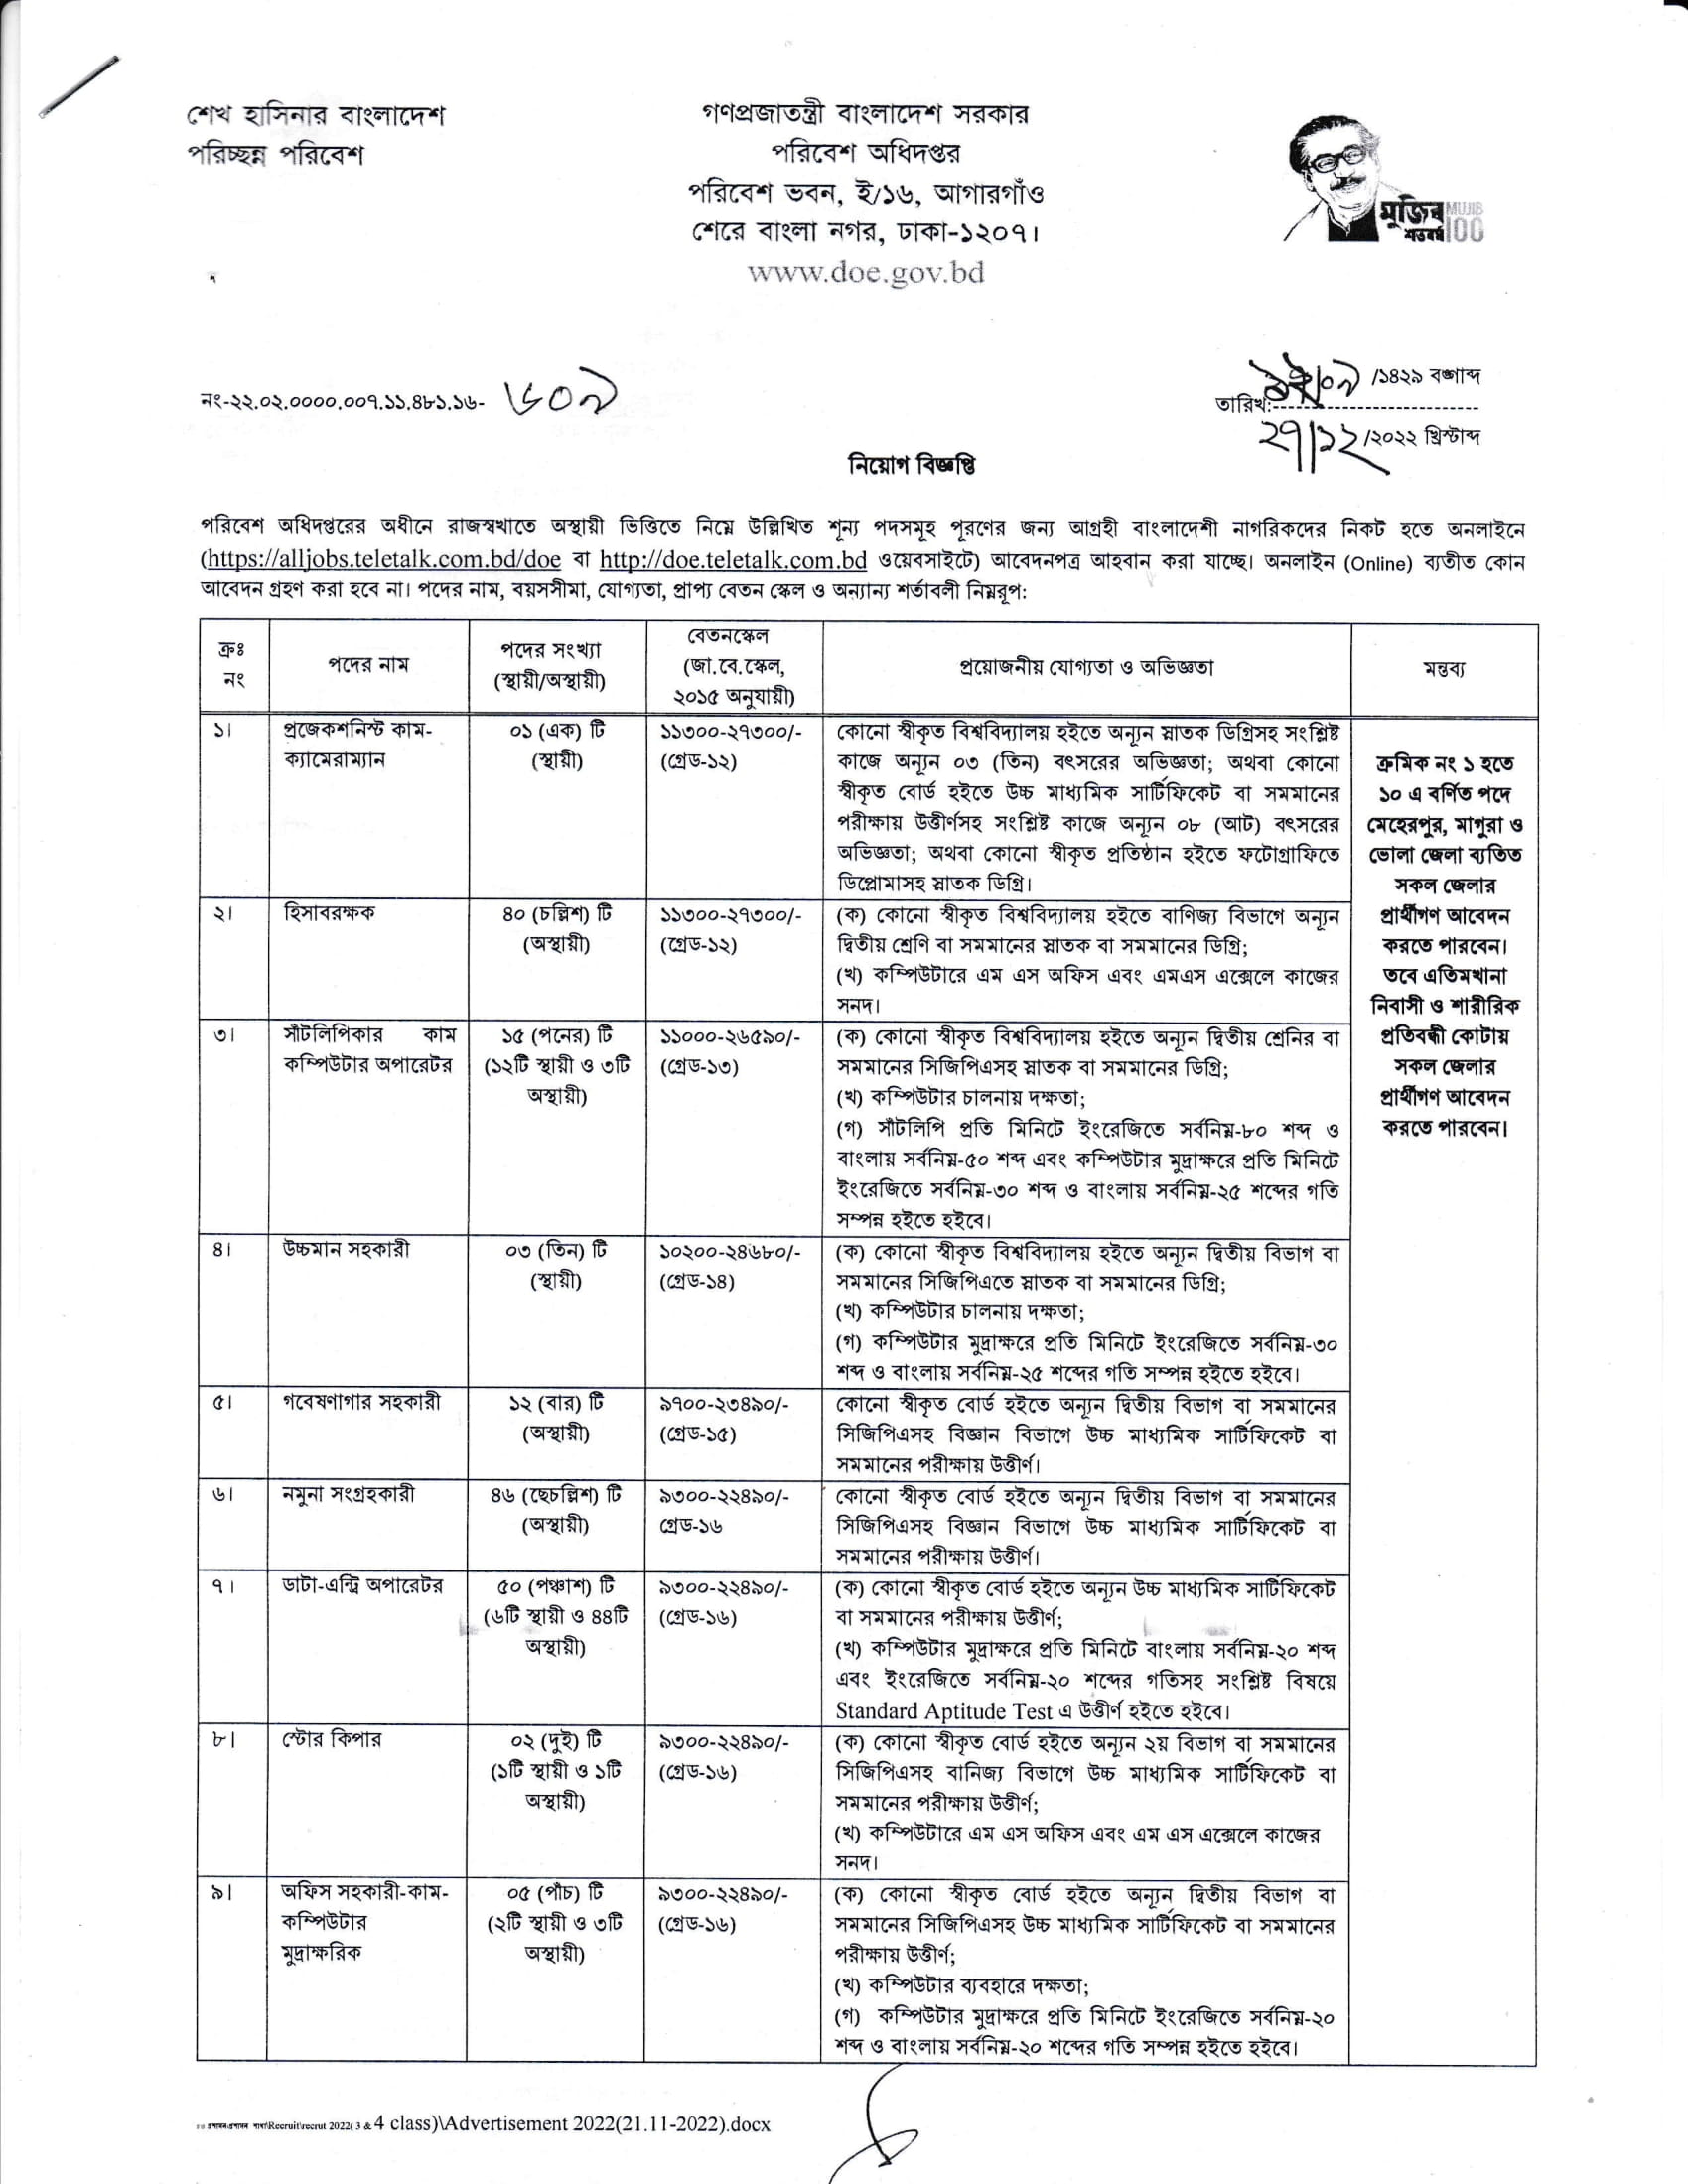 পরিবেশ অধিদপ্তর চাকরির নিয়োগ 2023 সার্কুলার - Department of Environment Jobs Recruitment 2023 Circular - জব সার্কুলার ২০২৩